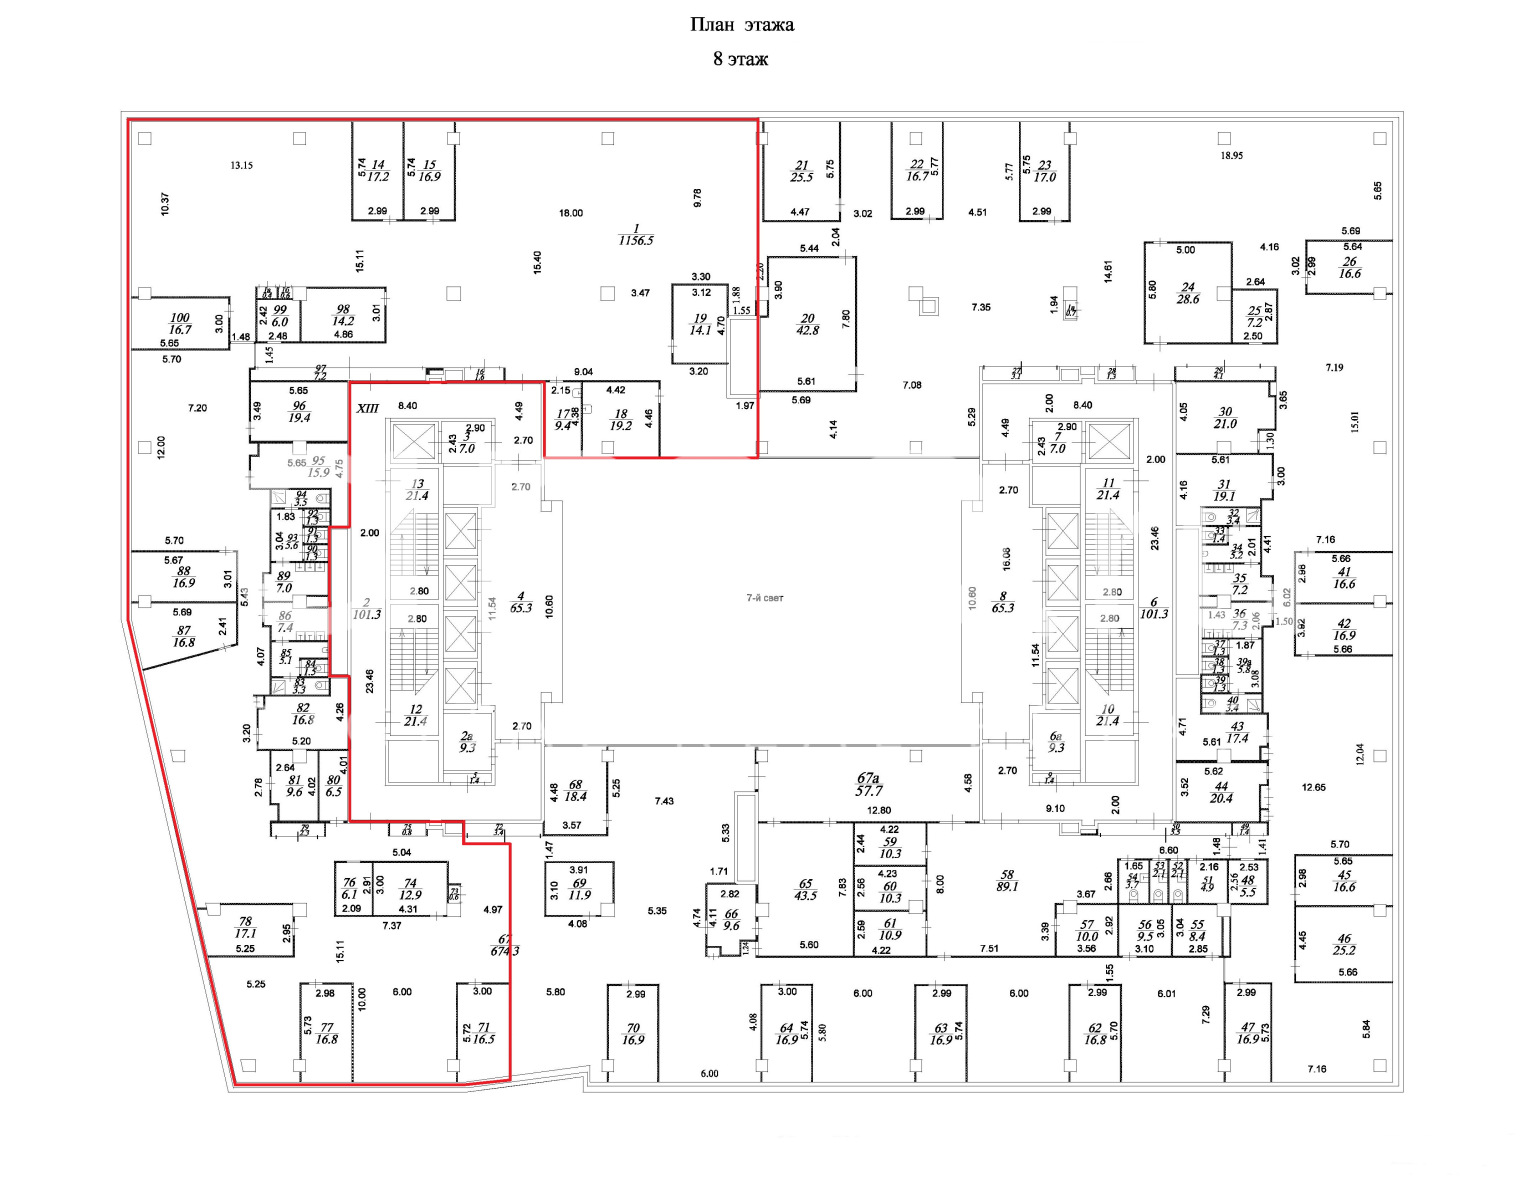 Планировка офиса 1332 м², 8 этаж, БЦ «Метрополис, строение 3»